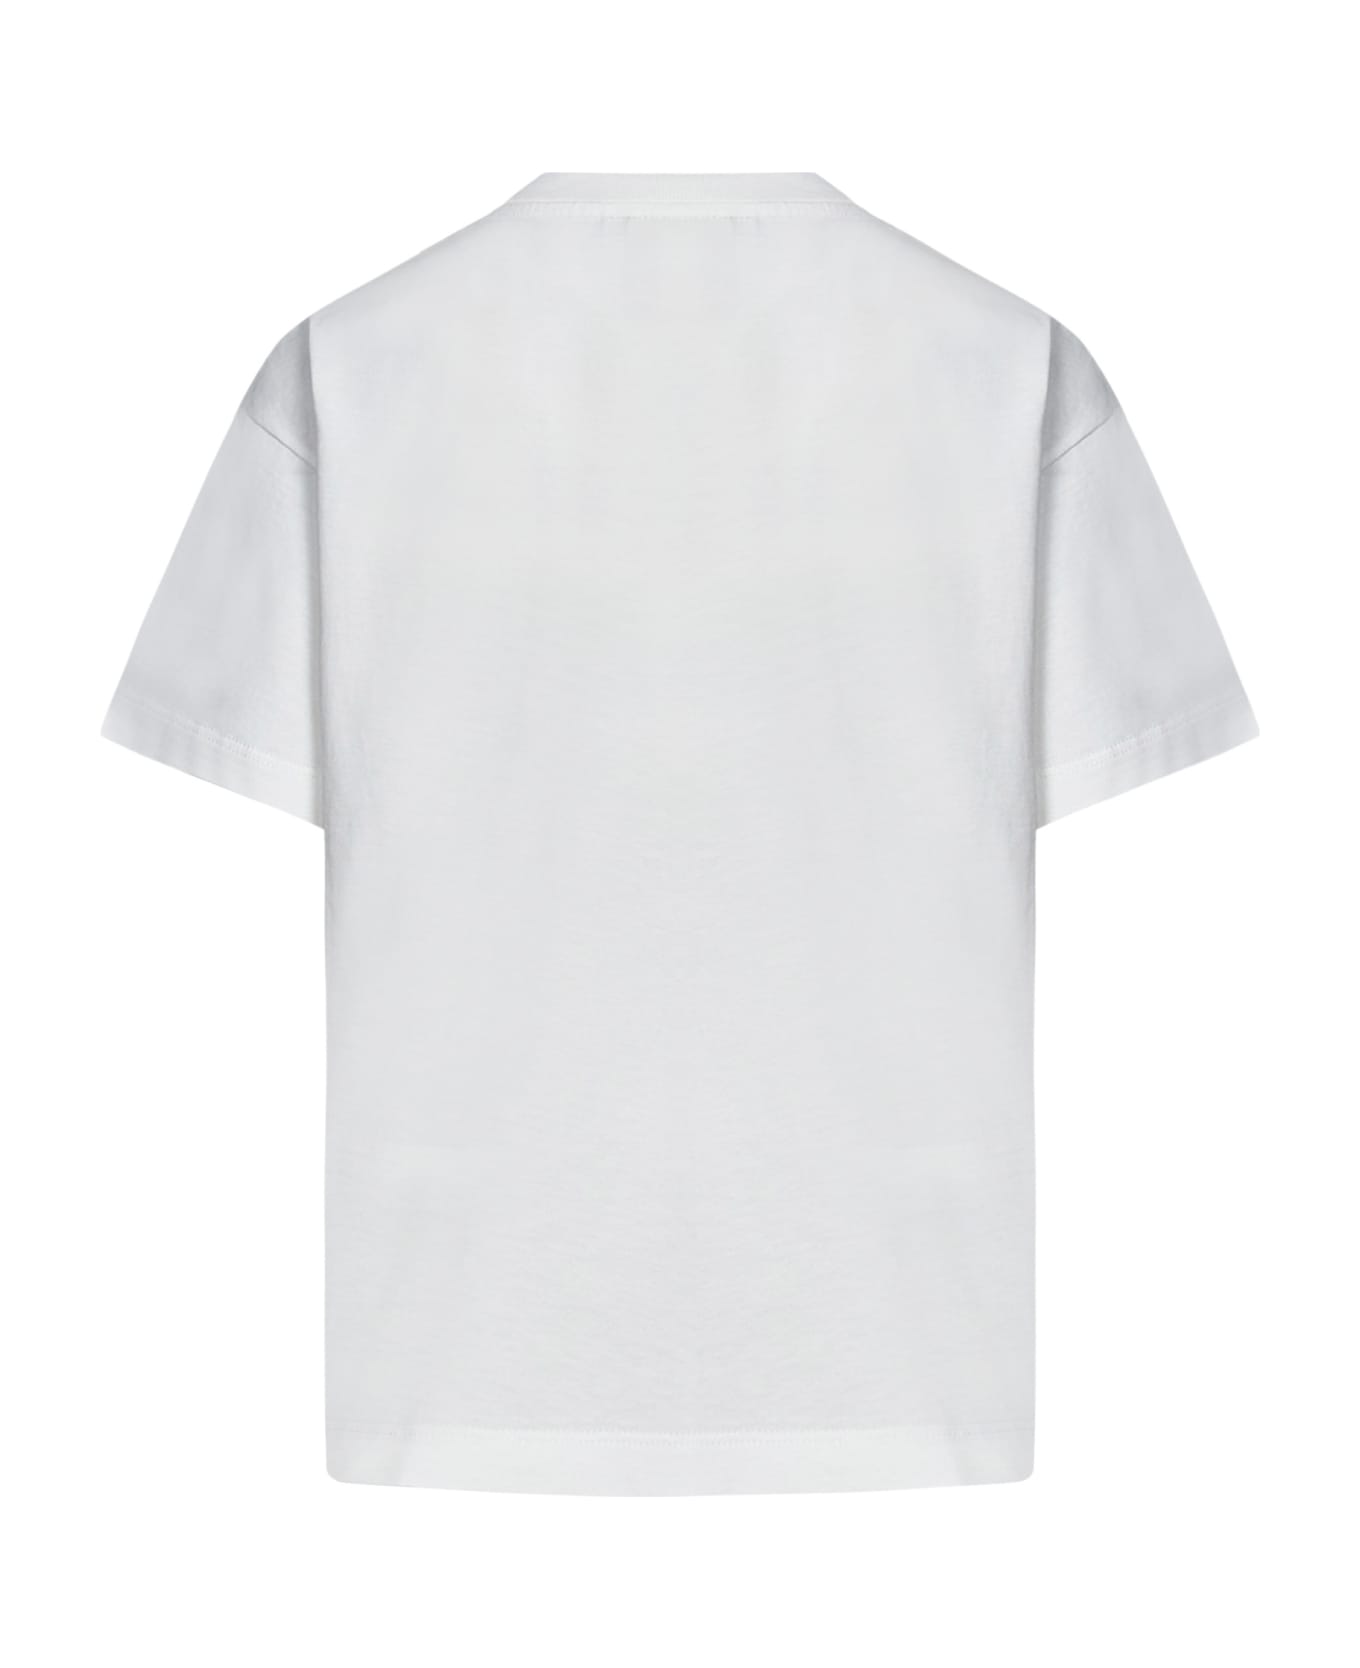 Fendi T-shirt - White